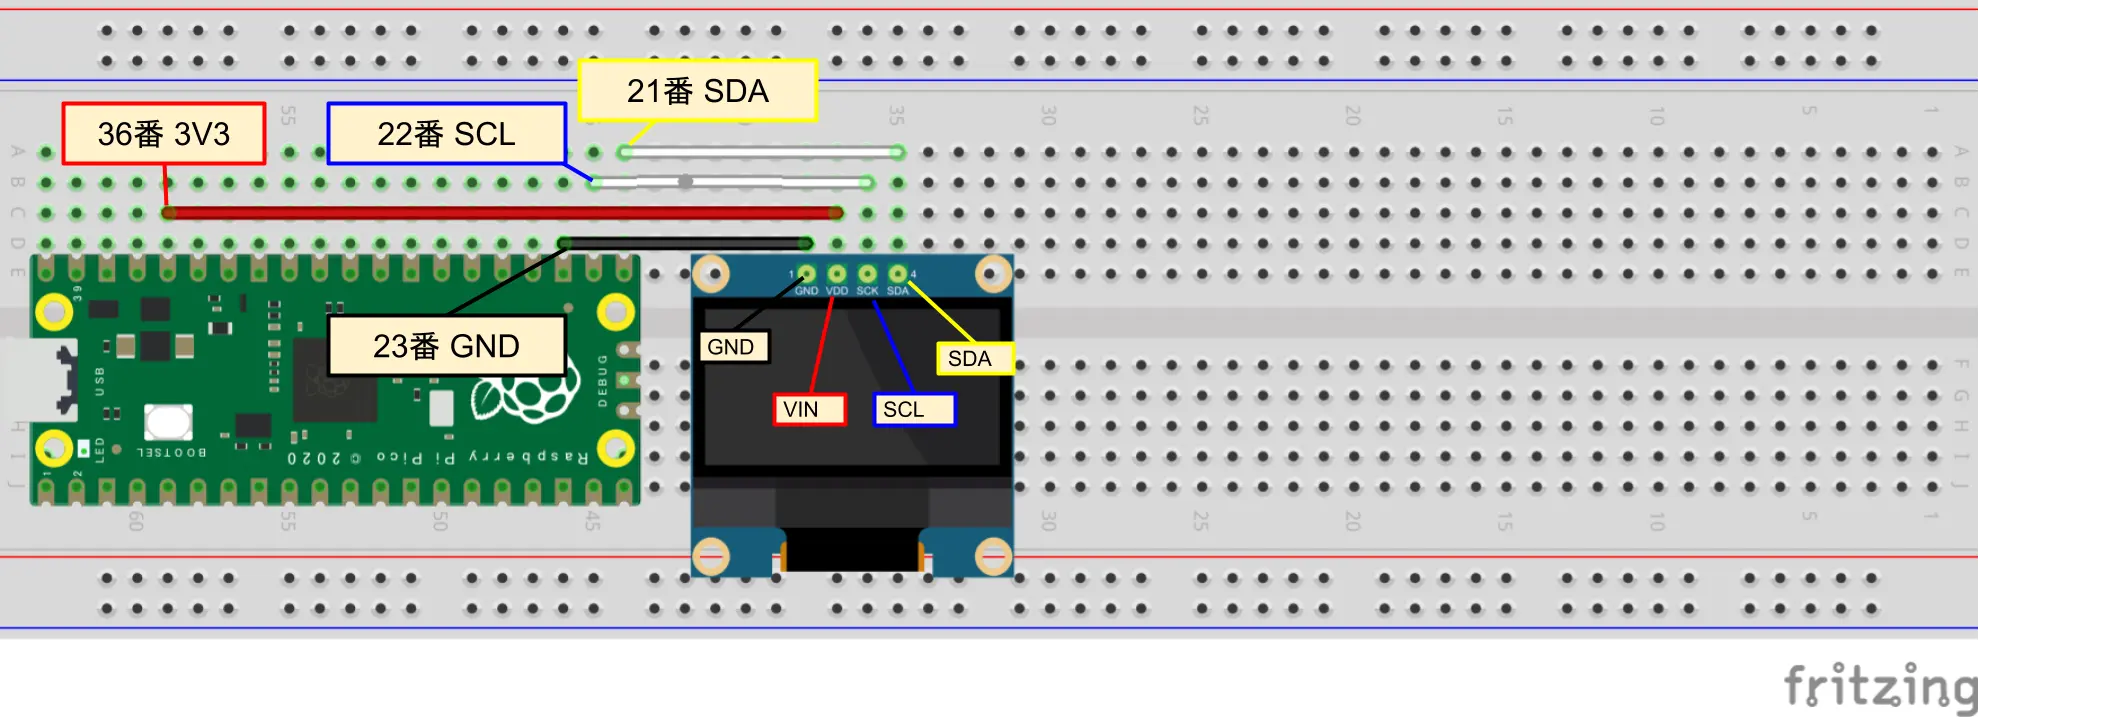 PicoとOLEDディスプレイを接続する方法をイラストで分かりやすく解説